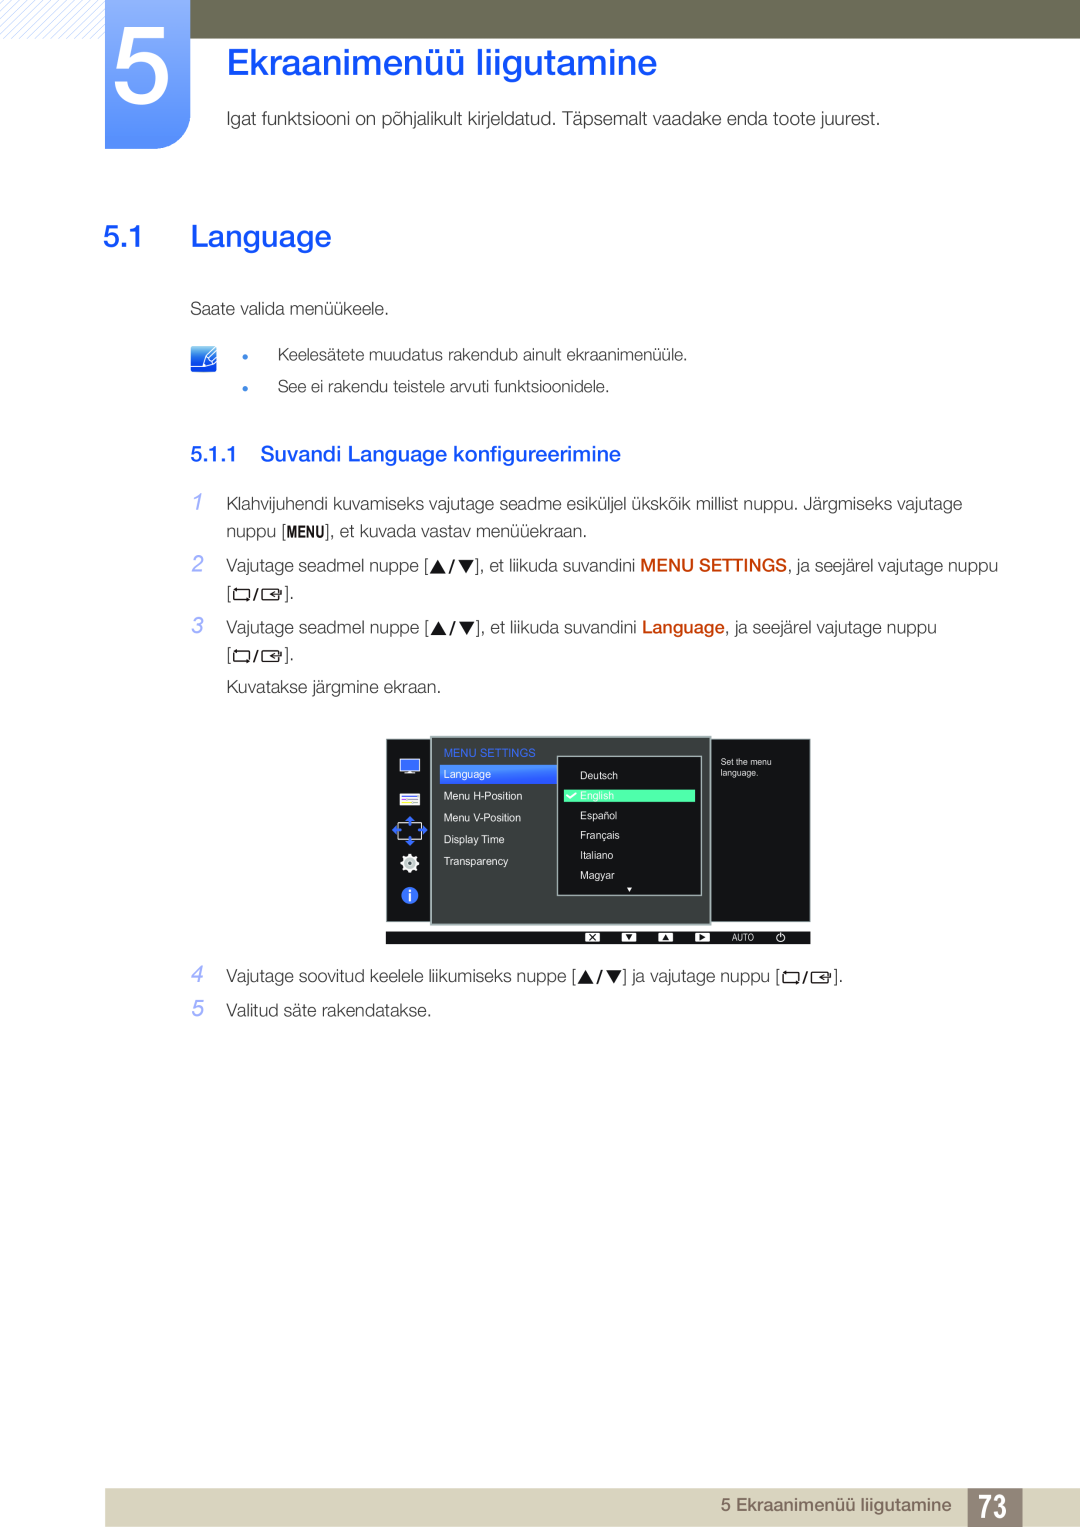 Samsung LS22D300NY/EN, LS24D340HSX/EN, LS24D300HS/EN manual Ekraanimenüü liigutamine, Suvandi Language konfigureerimine 